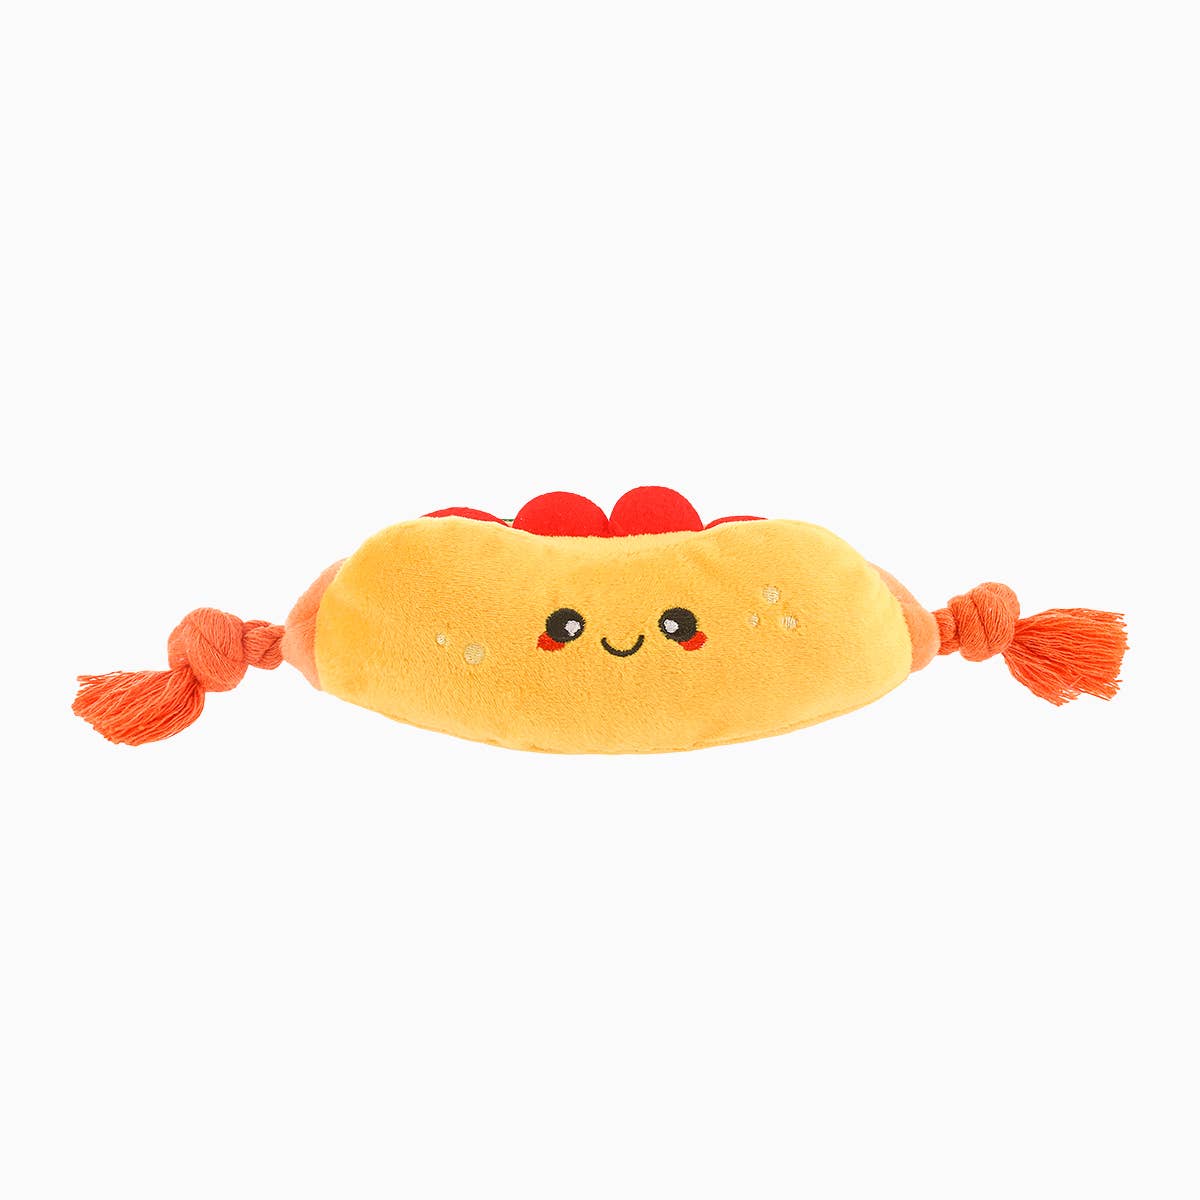 HugSmart Pet - Food Party | Hot dog